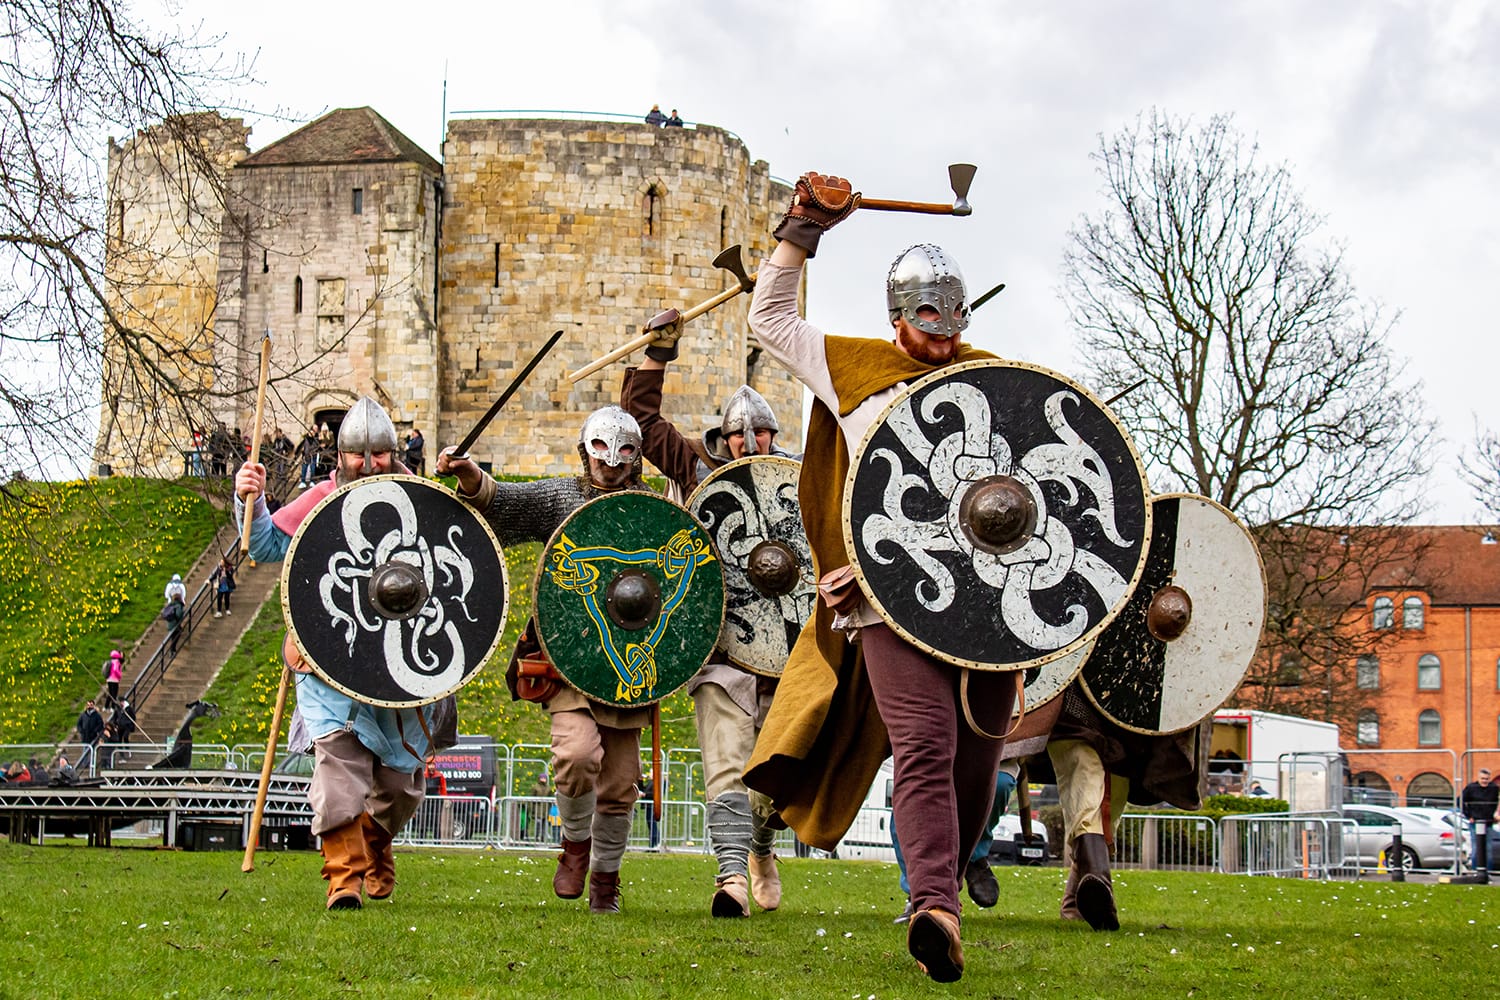 Vikings at York Minster during JORVIK Viking Festival